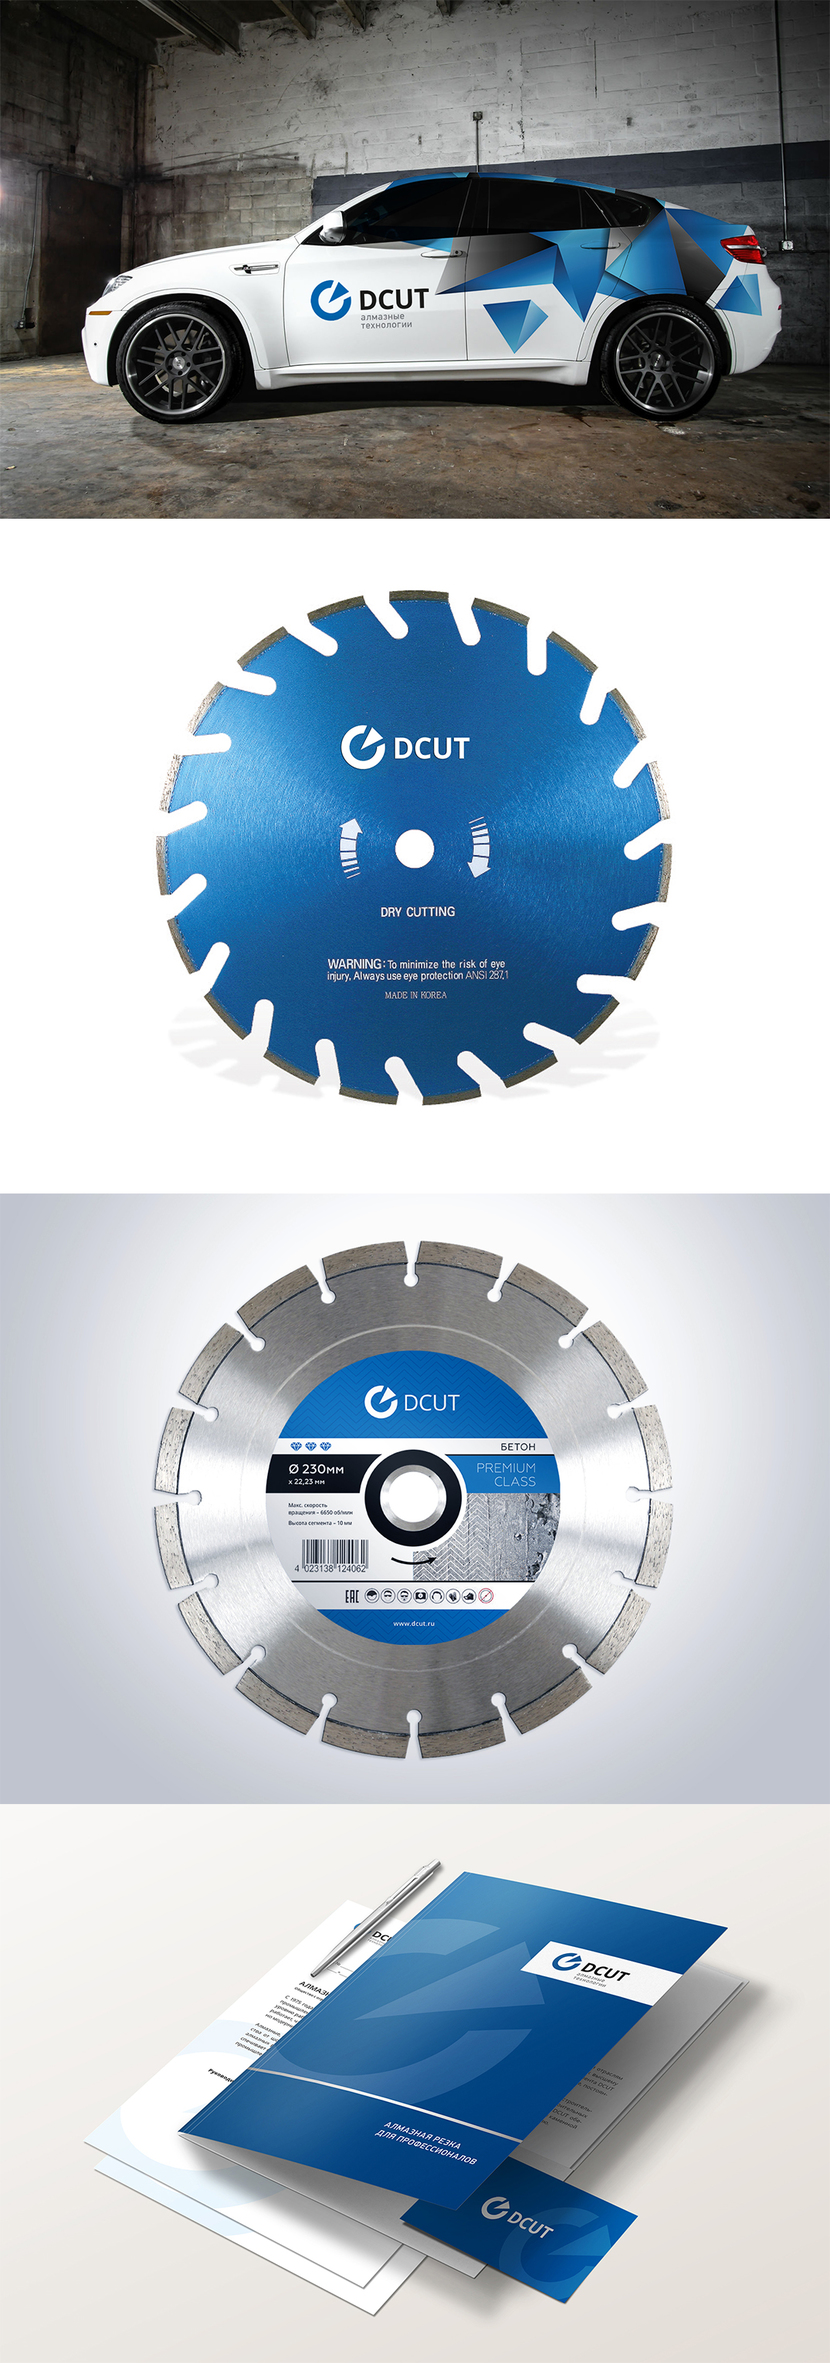 DCUT-авто-диск-наклейка - Разработка Логотипа и Фирменного стиля для компании реализующей оборудование по резке и шлифовке класса люкс.